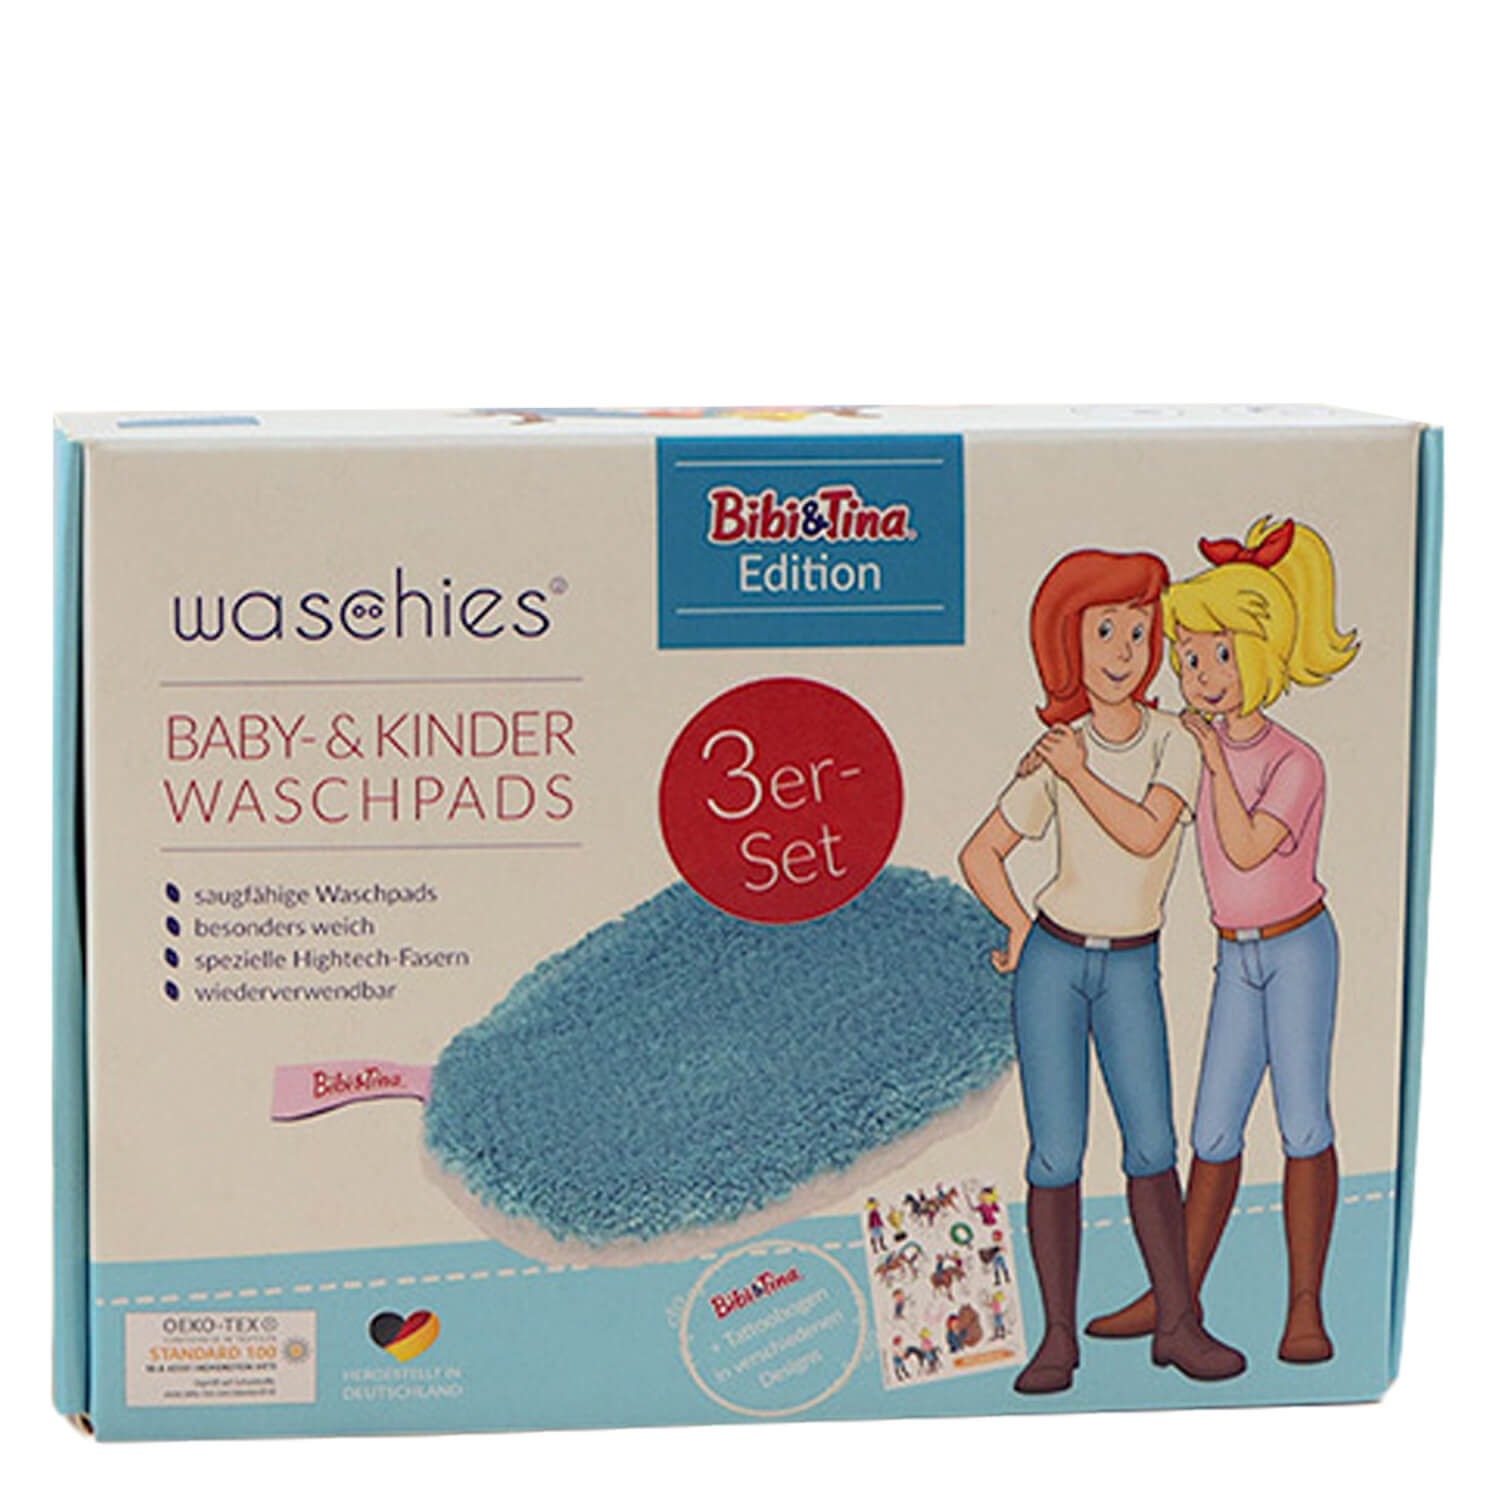 Produktbild von Waschies Kidsline - Waschpads für Babys & Kinder Bibi&Tina Blau Edition